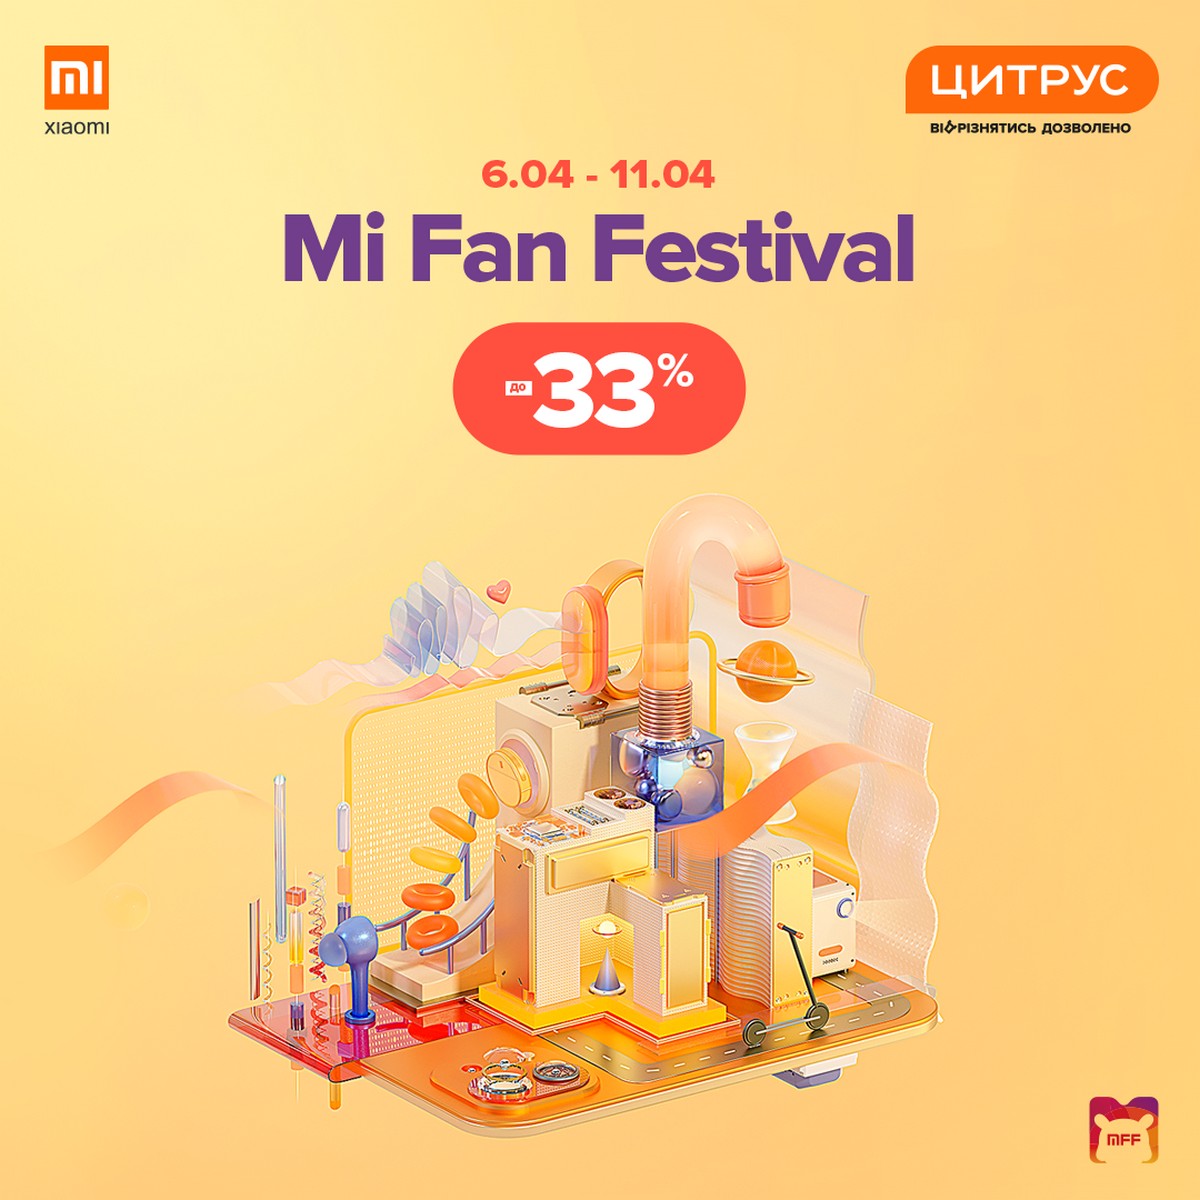 Mi fan. Xiaomi Fan Festival. Mi Fan Fest 2021. Mi Fan Festival. Xiaomi Gift Fan Festival.